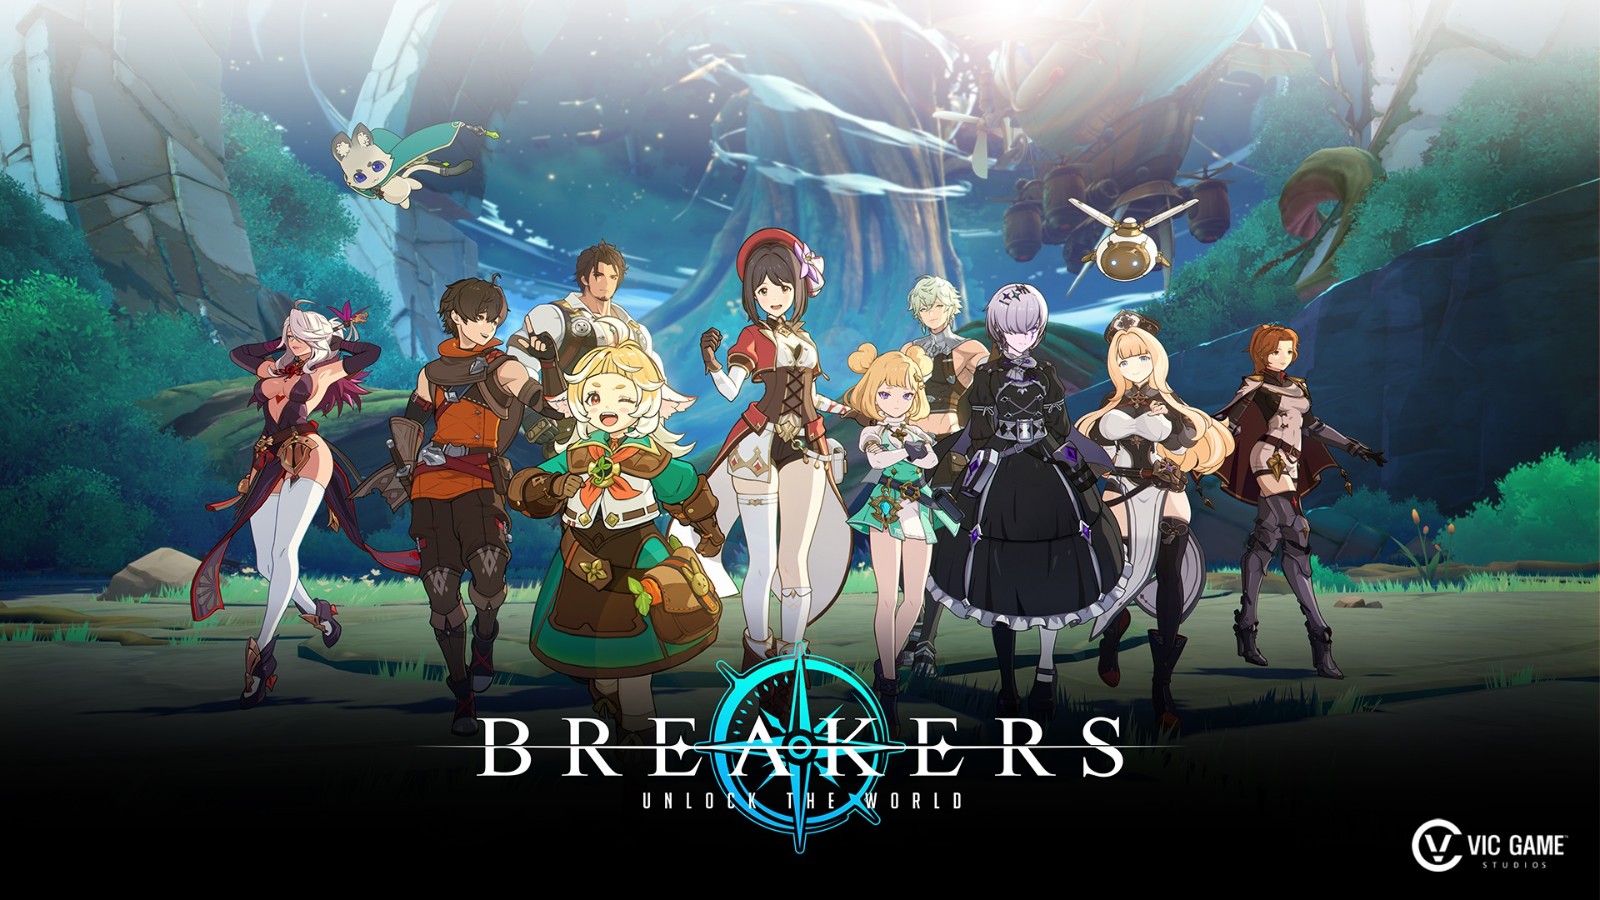 二次元开放世界RPG《Breakers: Unlock the World》游玩预告-咸鱼单机官网